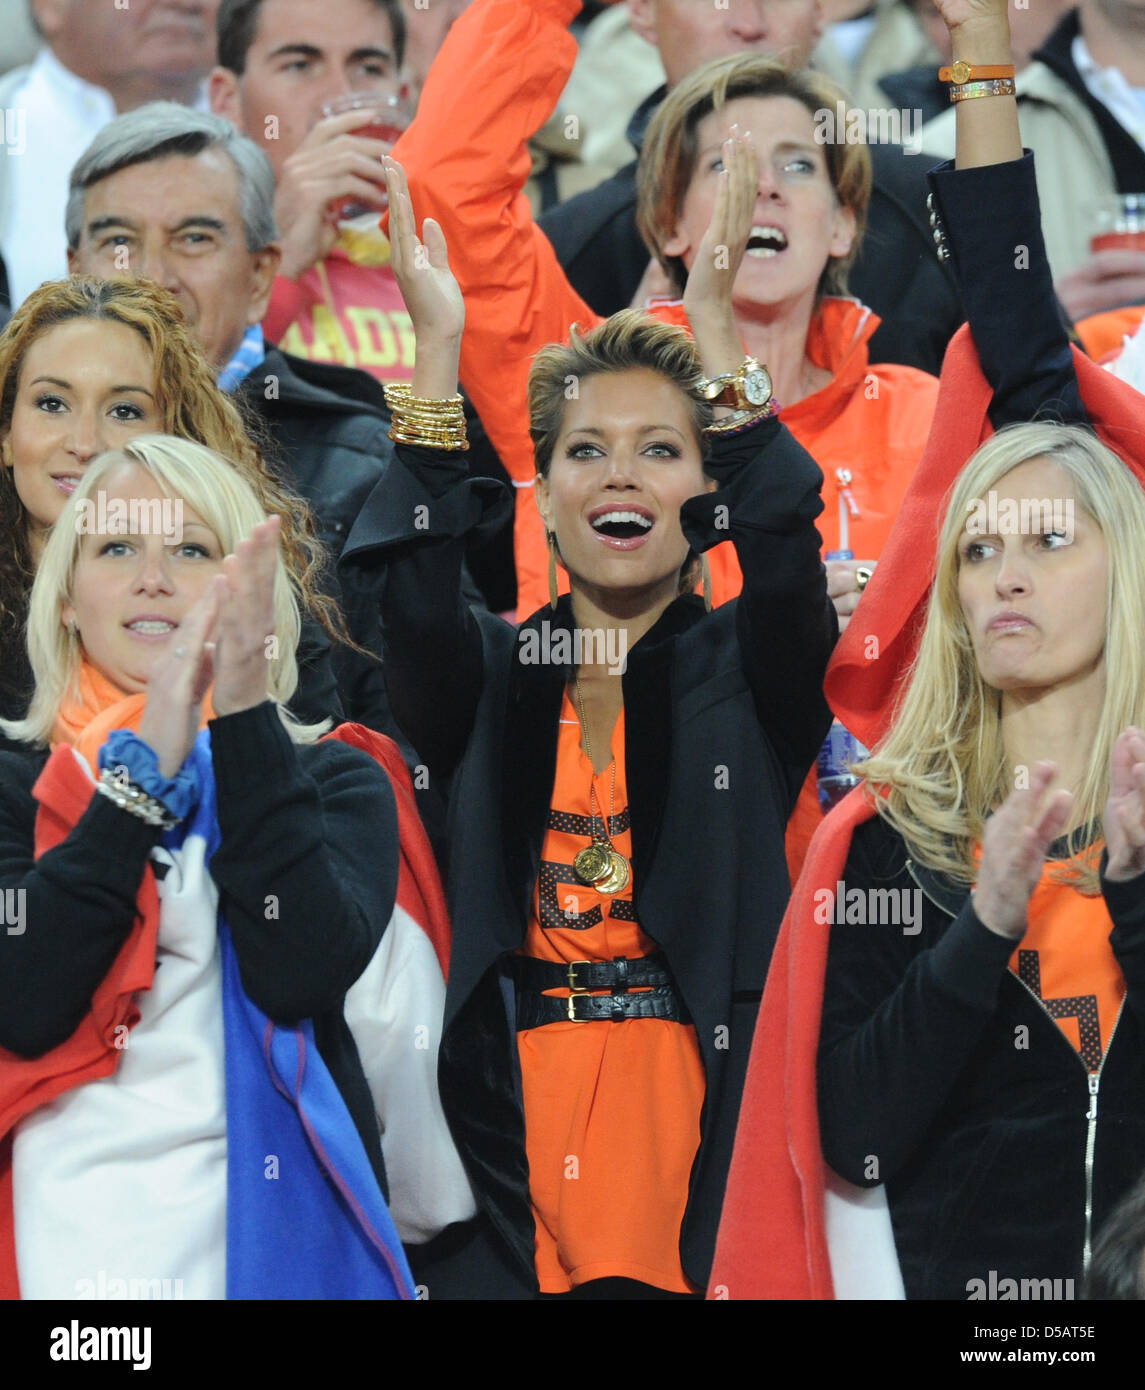 Bouchra van Persie (L-R), épouse de l'acteur néerlandais Robin van Persie, Robben Bernadien, épouse de l'acteur Néerlandais Arjen Robben, Sylvie van der Vaart, l'épouse du joueur néerlandais Rafael van der Vaart, et l'Andra van Bommel, épouse de l'acteur néerlandais Mark van Bommel sur le stand avant la Coupe du Monde 2010 match final entre les Pays-Bas et l'Espagne au stade Soccer City à Johannesburg, en Afri Banque D'Images